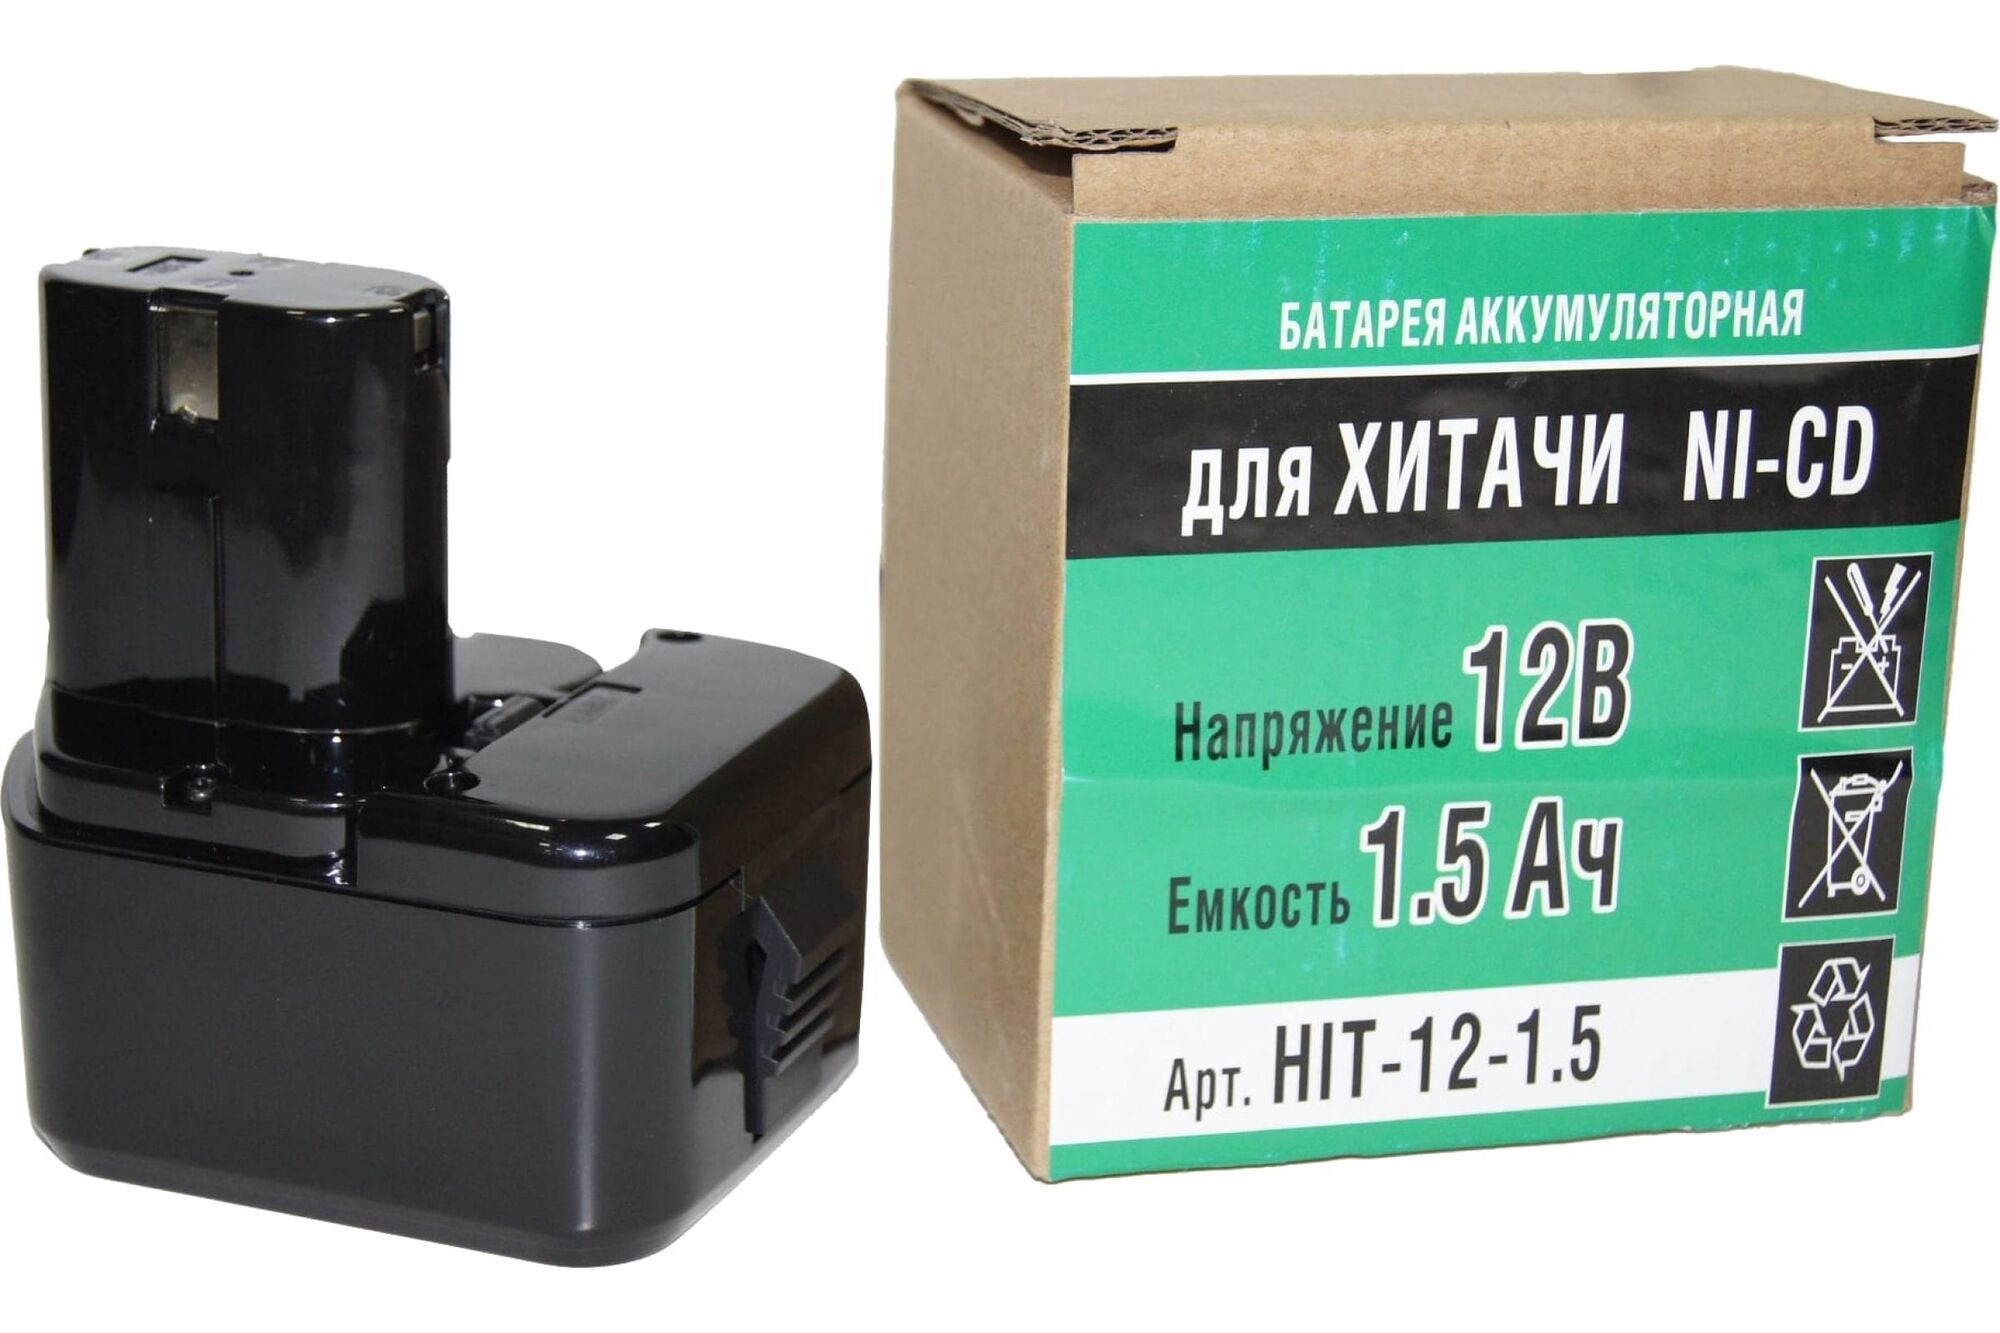 Аккумулятор Ni-CD (12 V, 1.5 АН) для Hitachi DS12DVF3 P.I.T. Hit-12-1,5